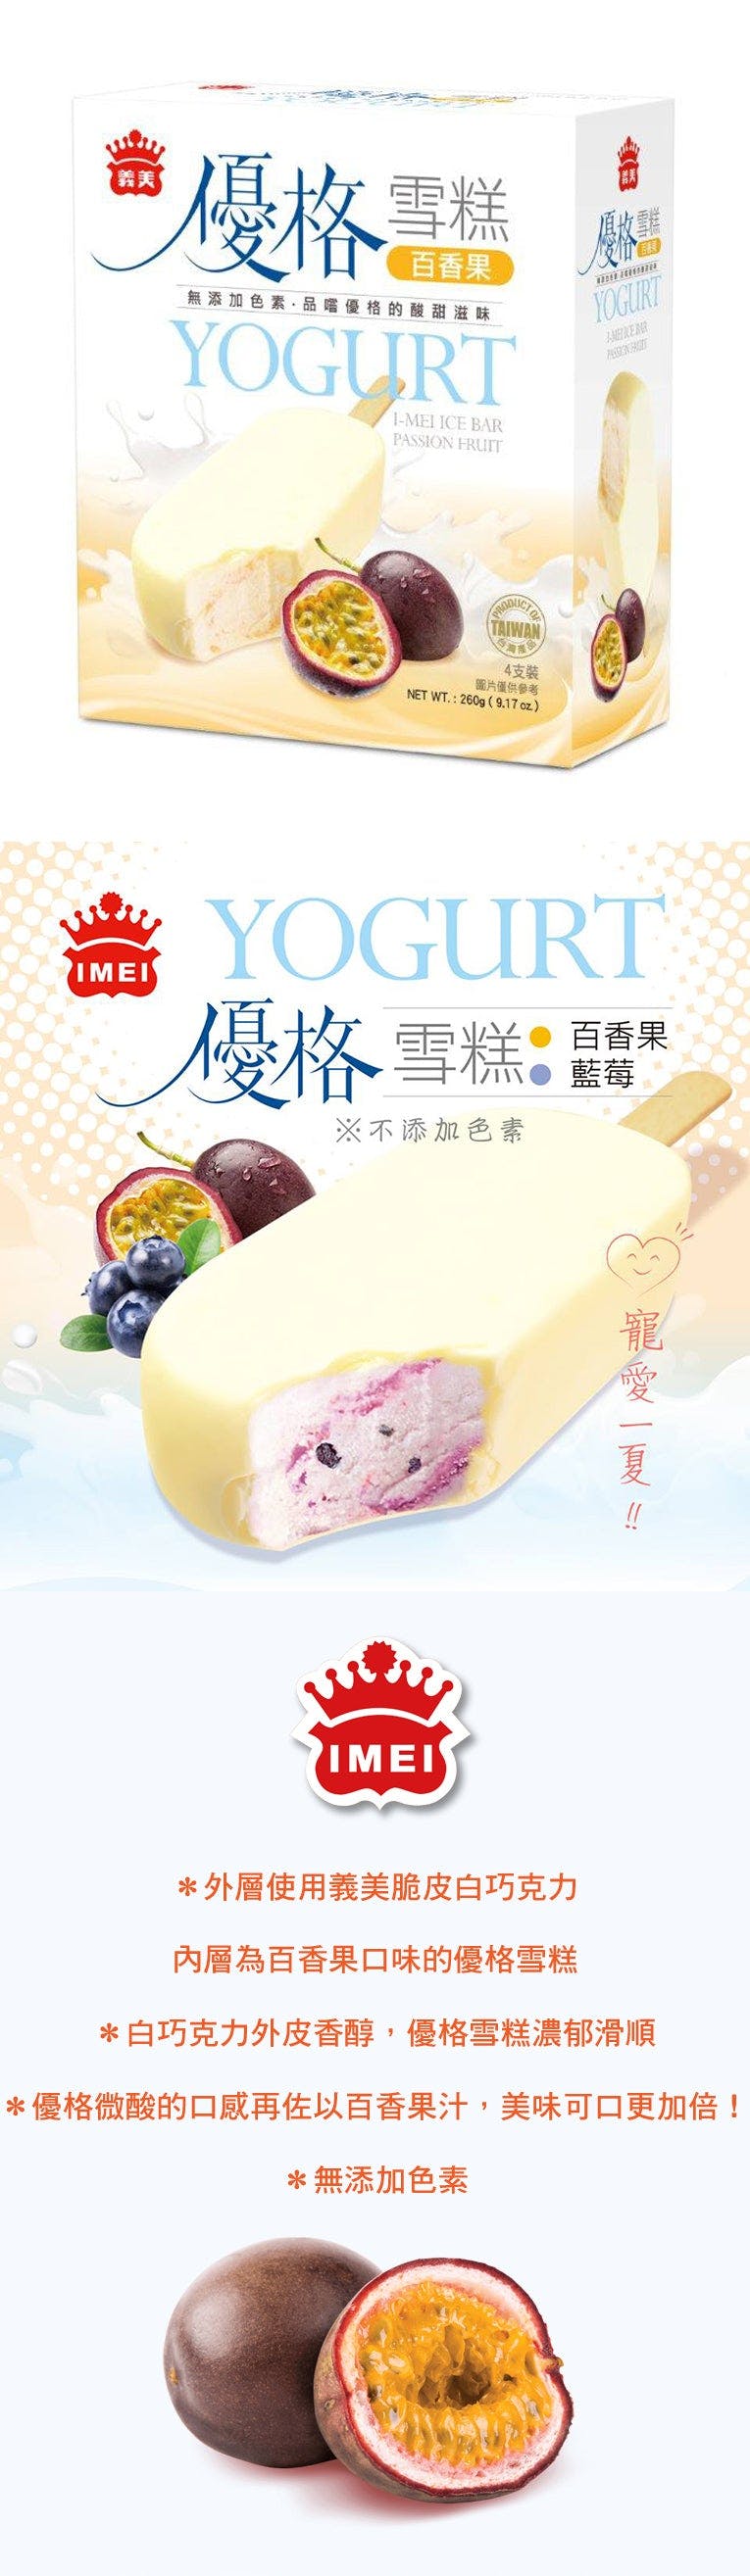 Passion Fruit-Flavored Ice Cream